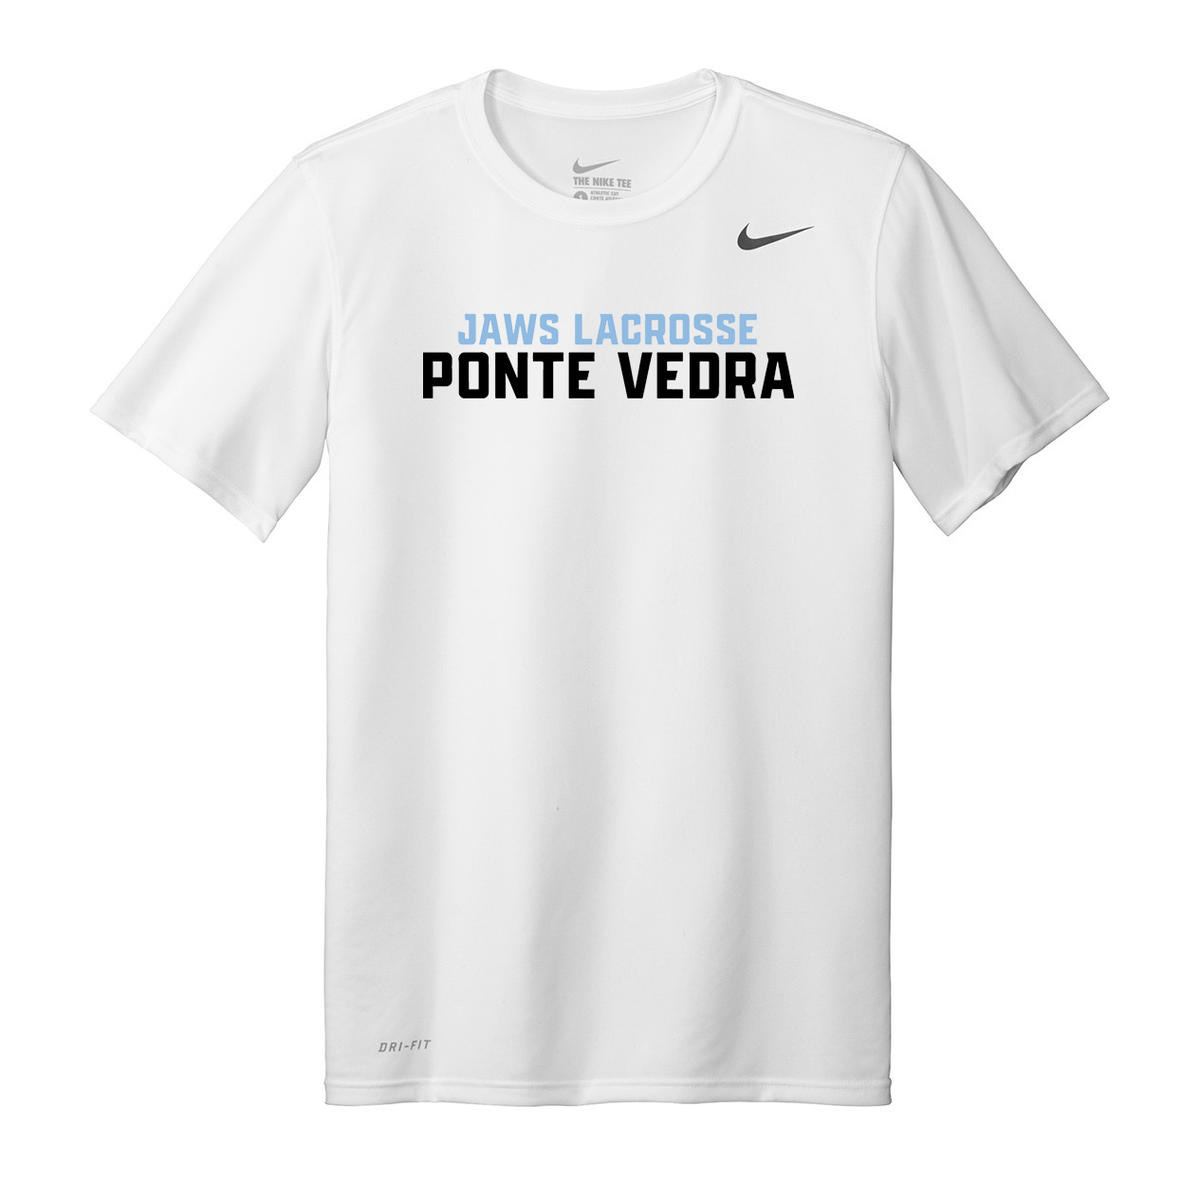 Ponte Vedra JAWS Lacrosse Nike Legend Tee